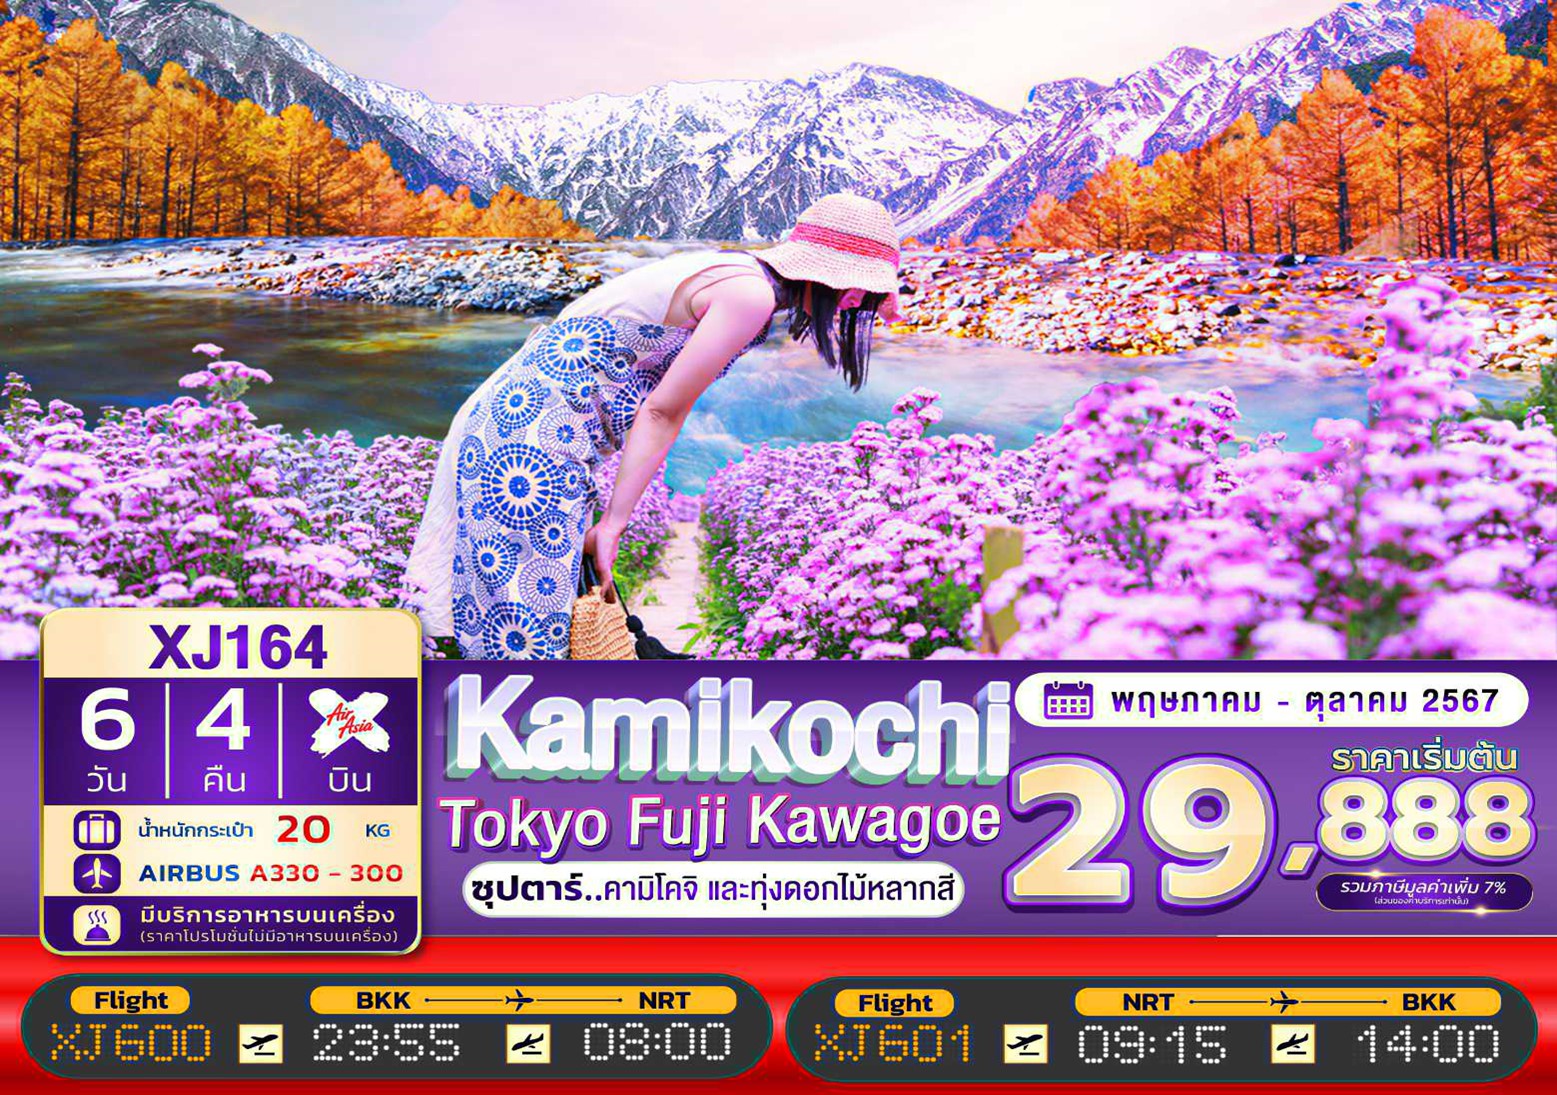 ทัวร์ญี่ปุ่น TOKYO KAMIKOCHI FUJI KAWAGOE 6D 4N BY XJ "ซุปตาร์คามิโคจิ และทุ่งดอกไม้หลากสี"